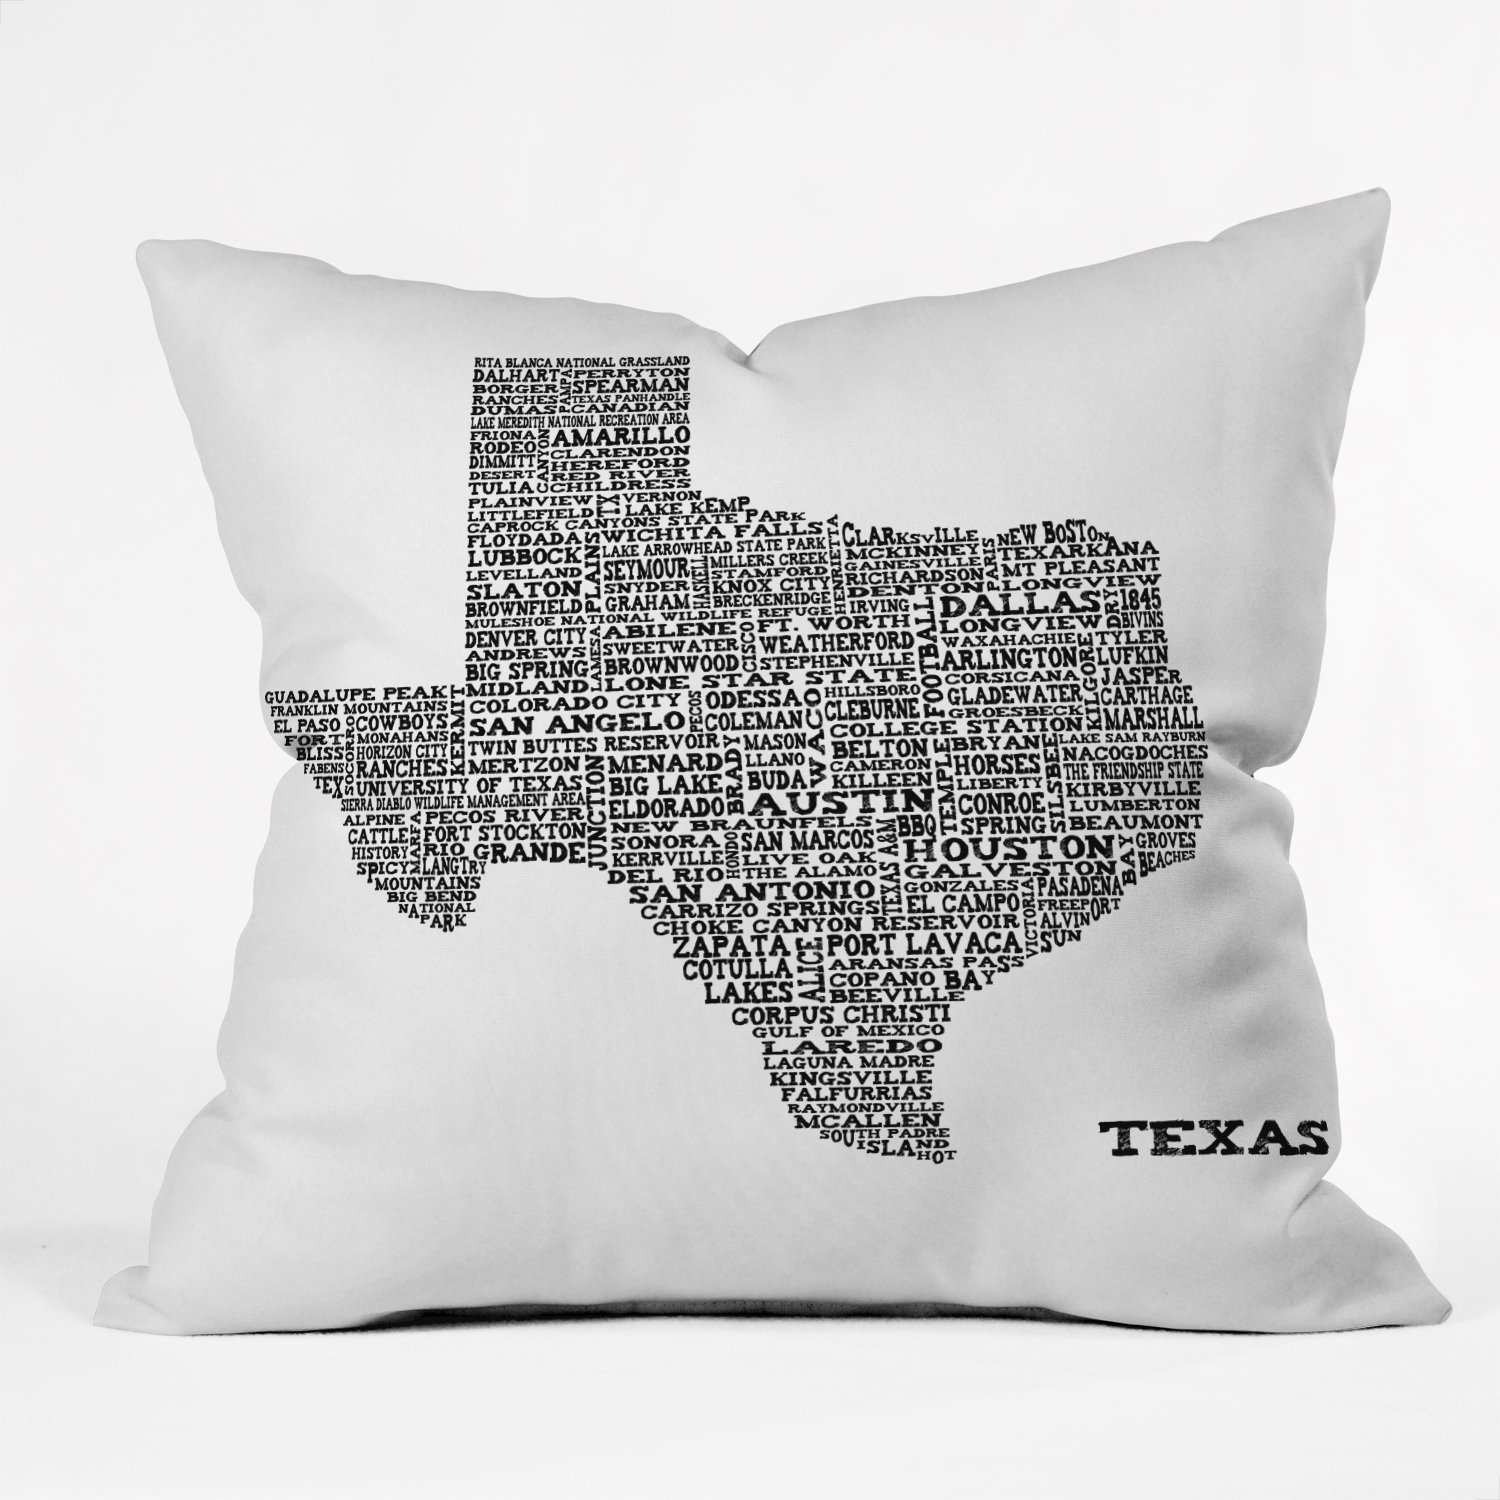 TEXAS MAP Throw Pillow - Image 0